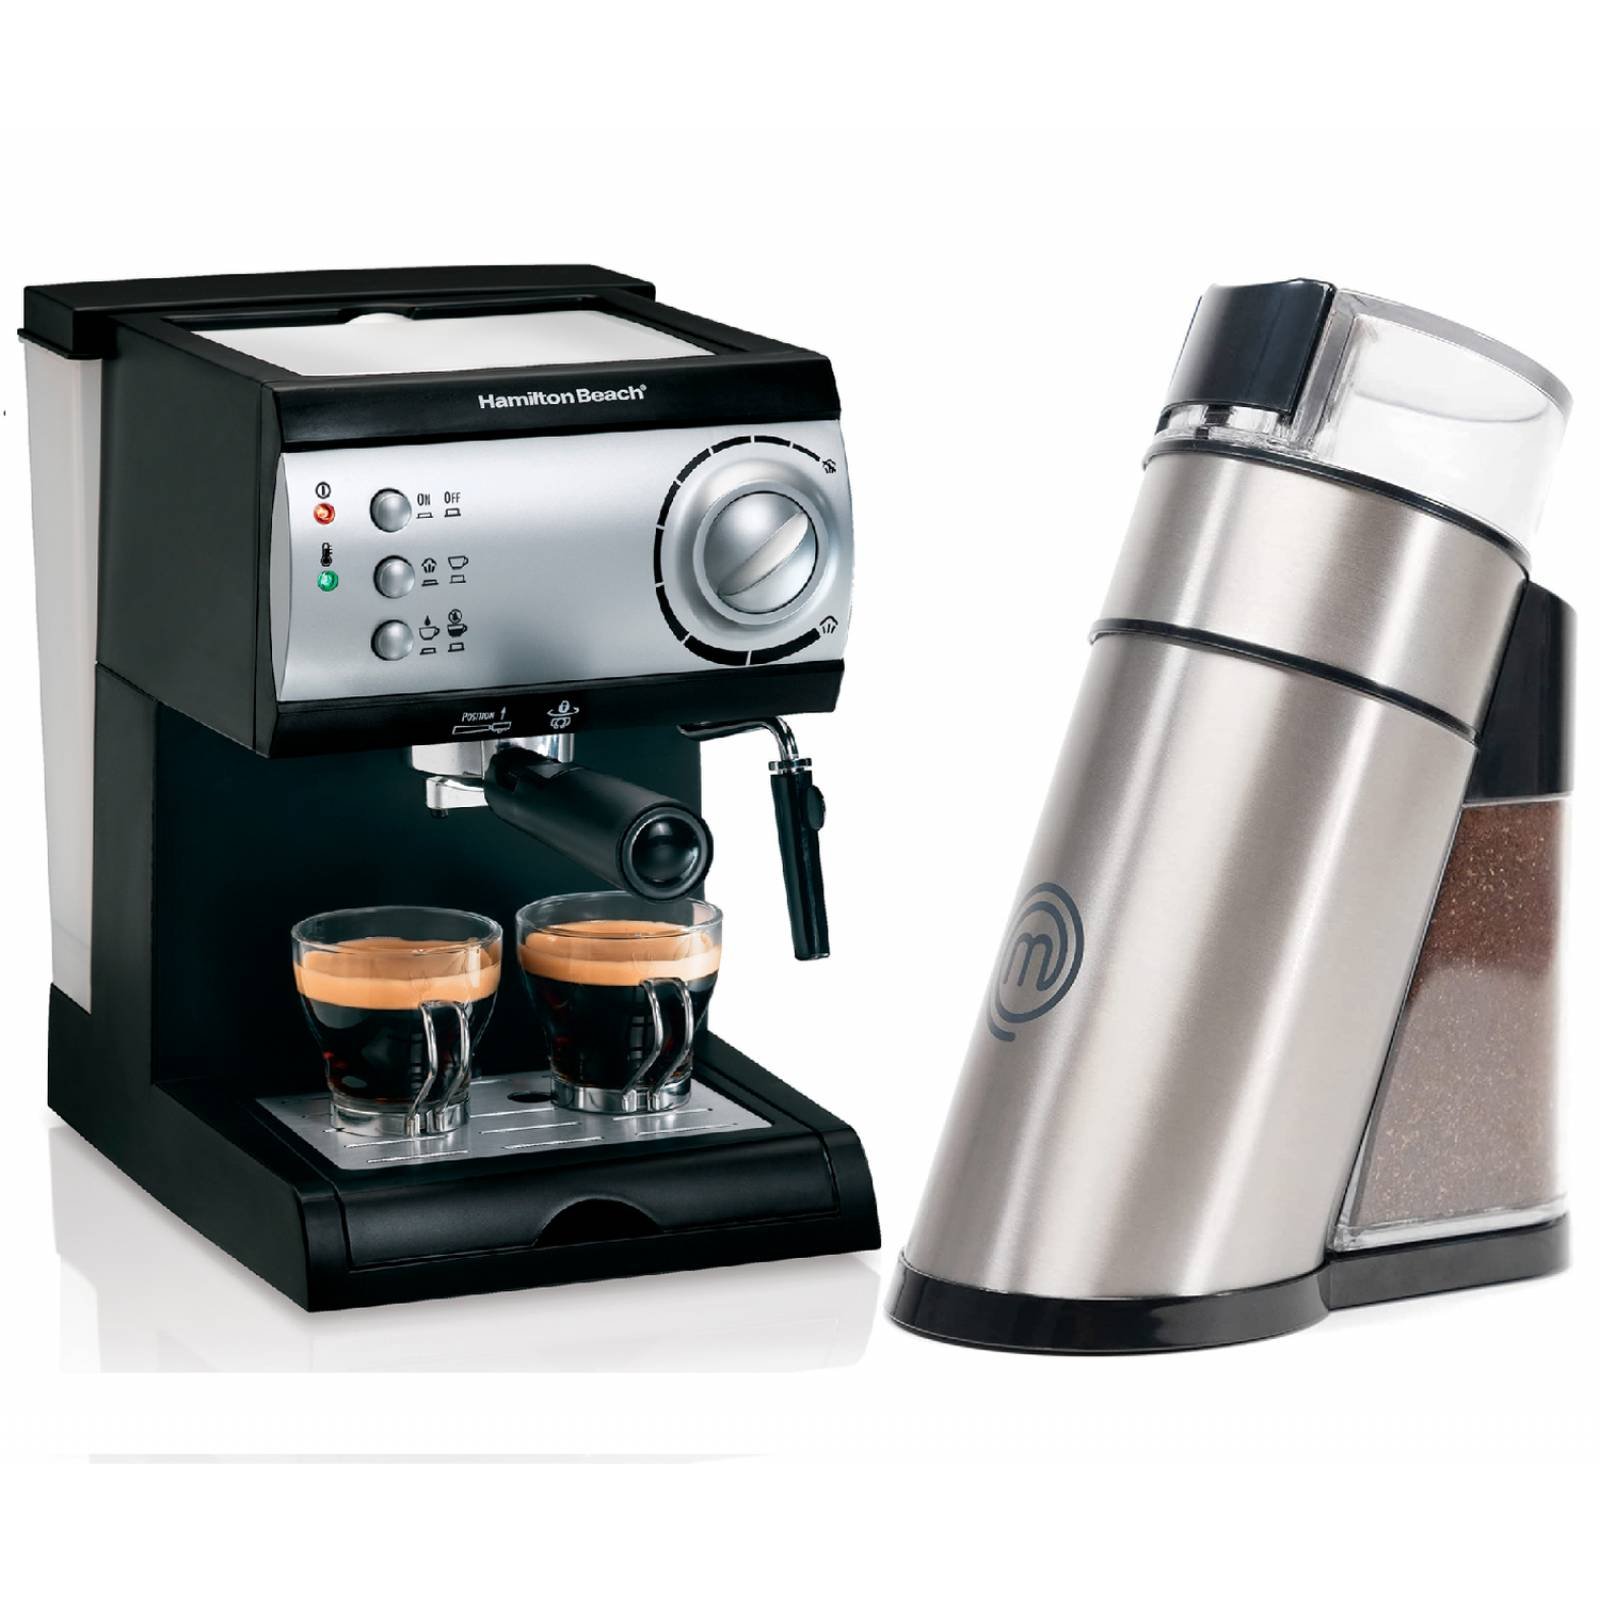  Gretess Cafetera - Máquina de café de cápsulas, café expreso,  capuchino y café con leche, para cápsulas Dolce Gusto, tanque de agua de 34  onzas, 3 ajustes de nivel, OPT-XW 